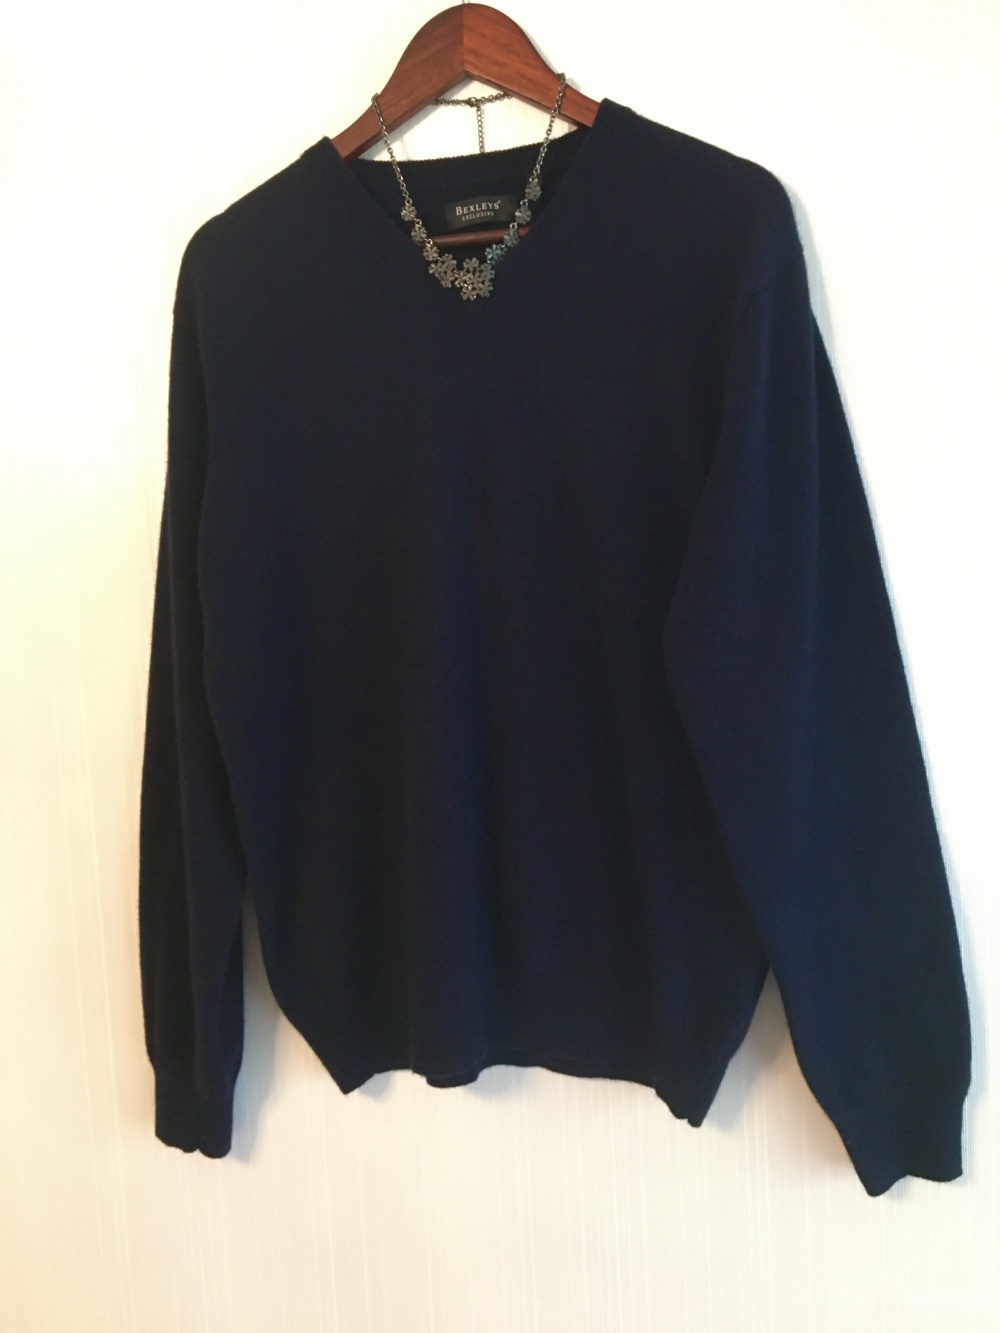 Пуловер бренда Bexleys, шерсть мериноса - кашемир, размер L